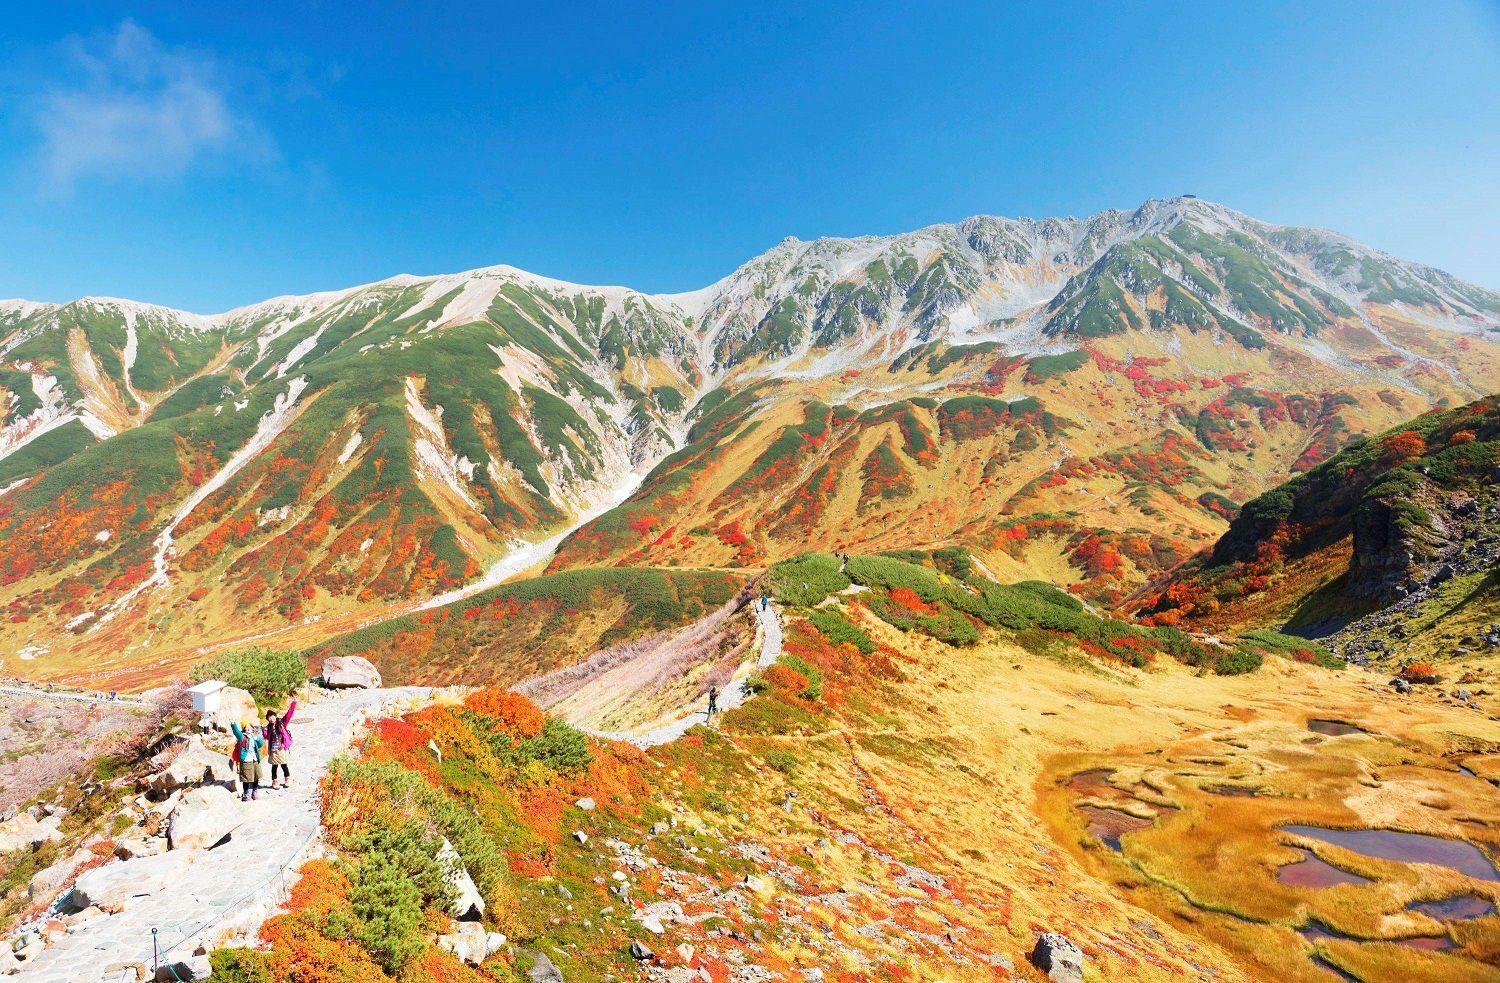 メイン画像 富山県では9月から紅葉が見られる 立山黒部アルペンルート で紅葉が見ごろ Retrip リトリップ